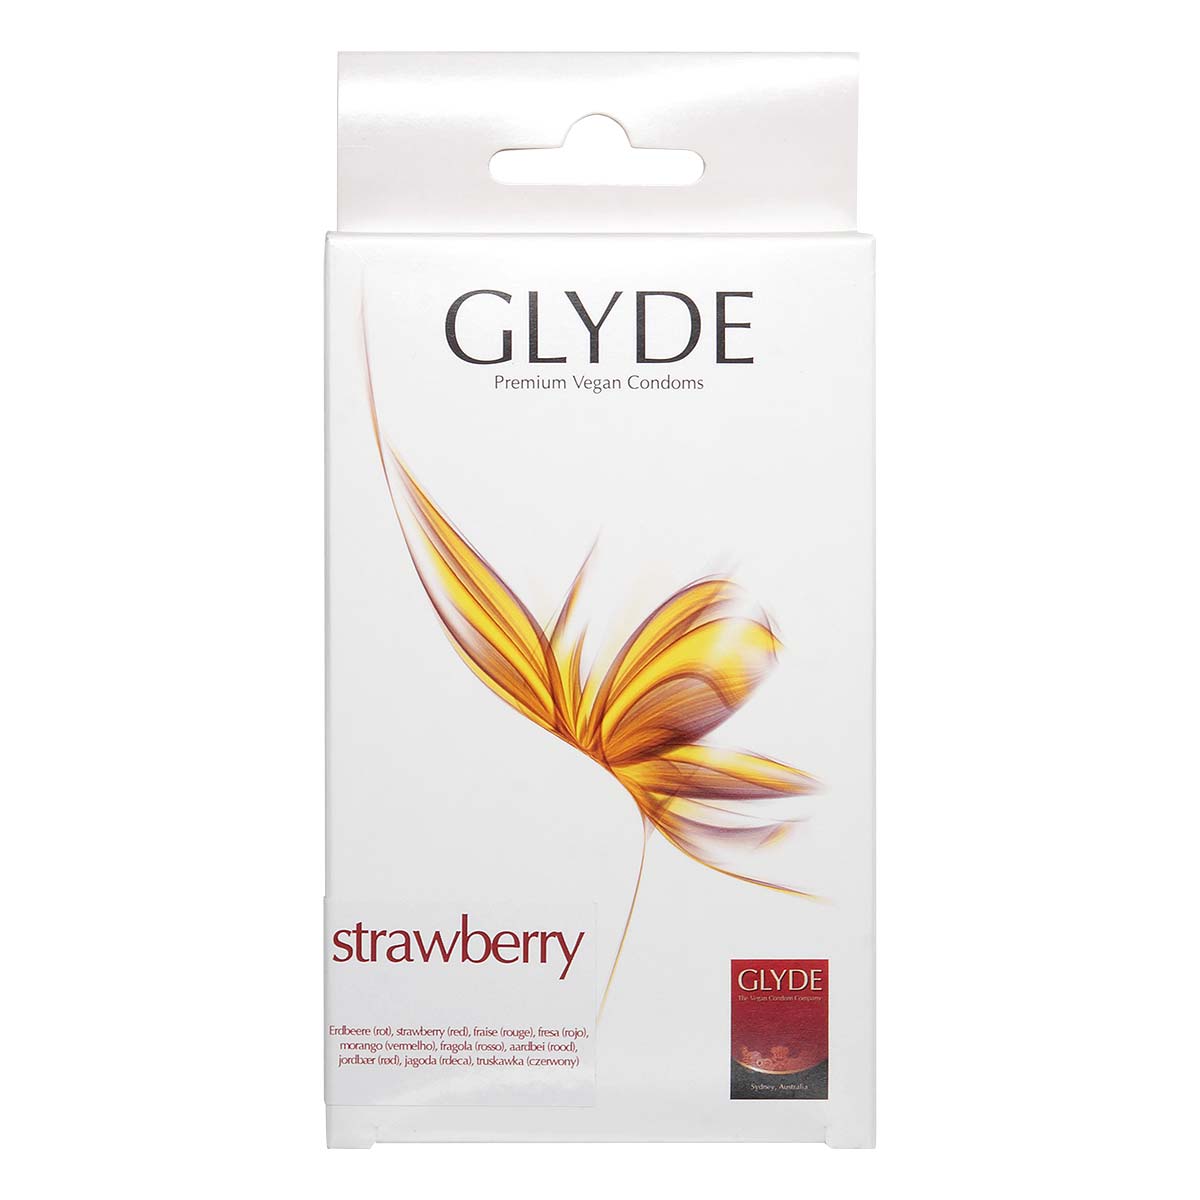 Glyde 格蕾迪 素食主义安全套 草莓香 10 片装 乳胶安全套-p_2